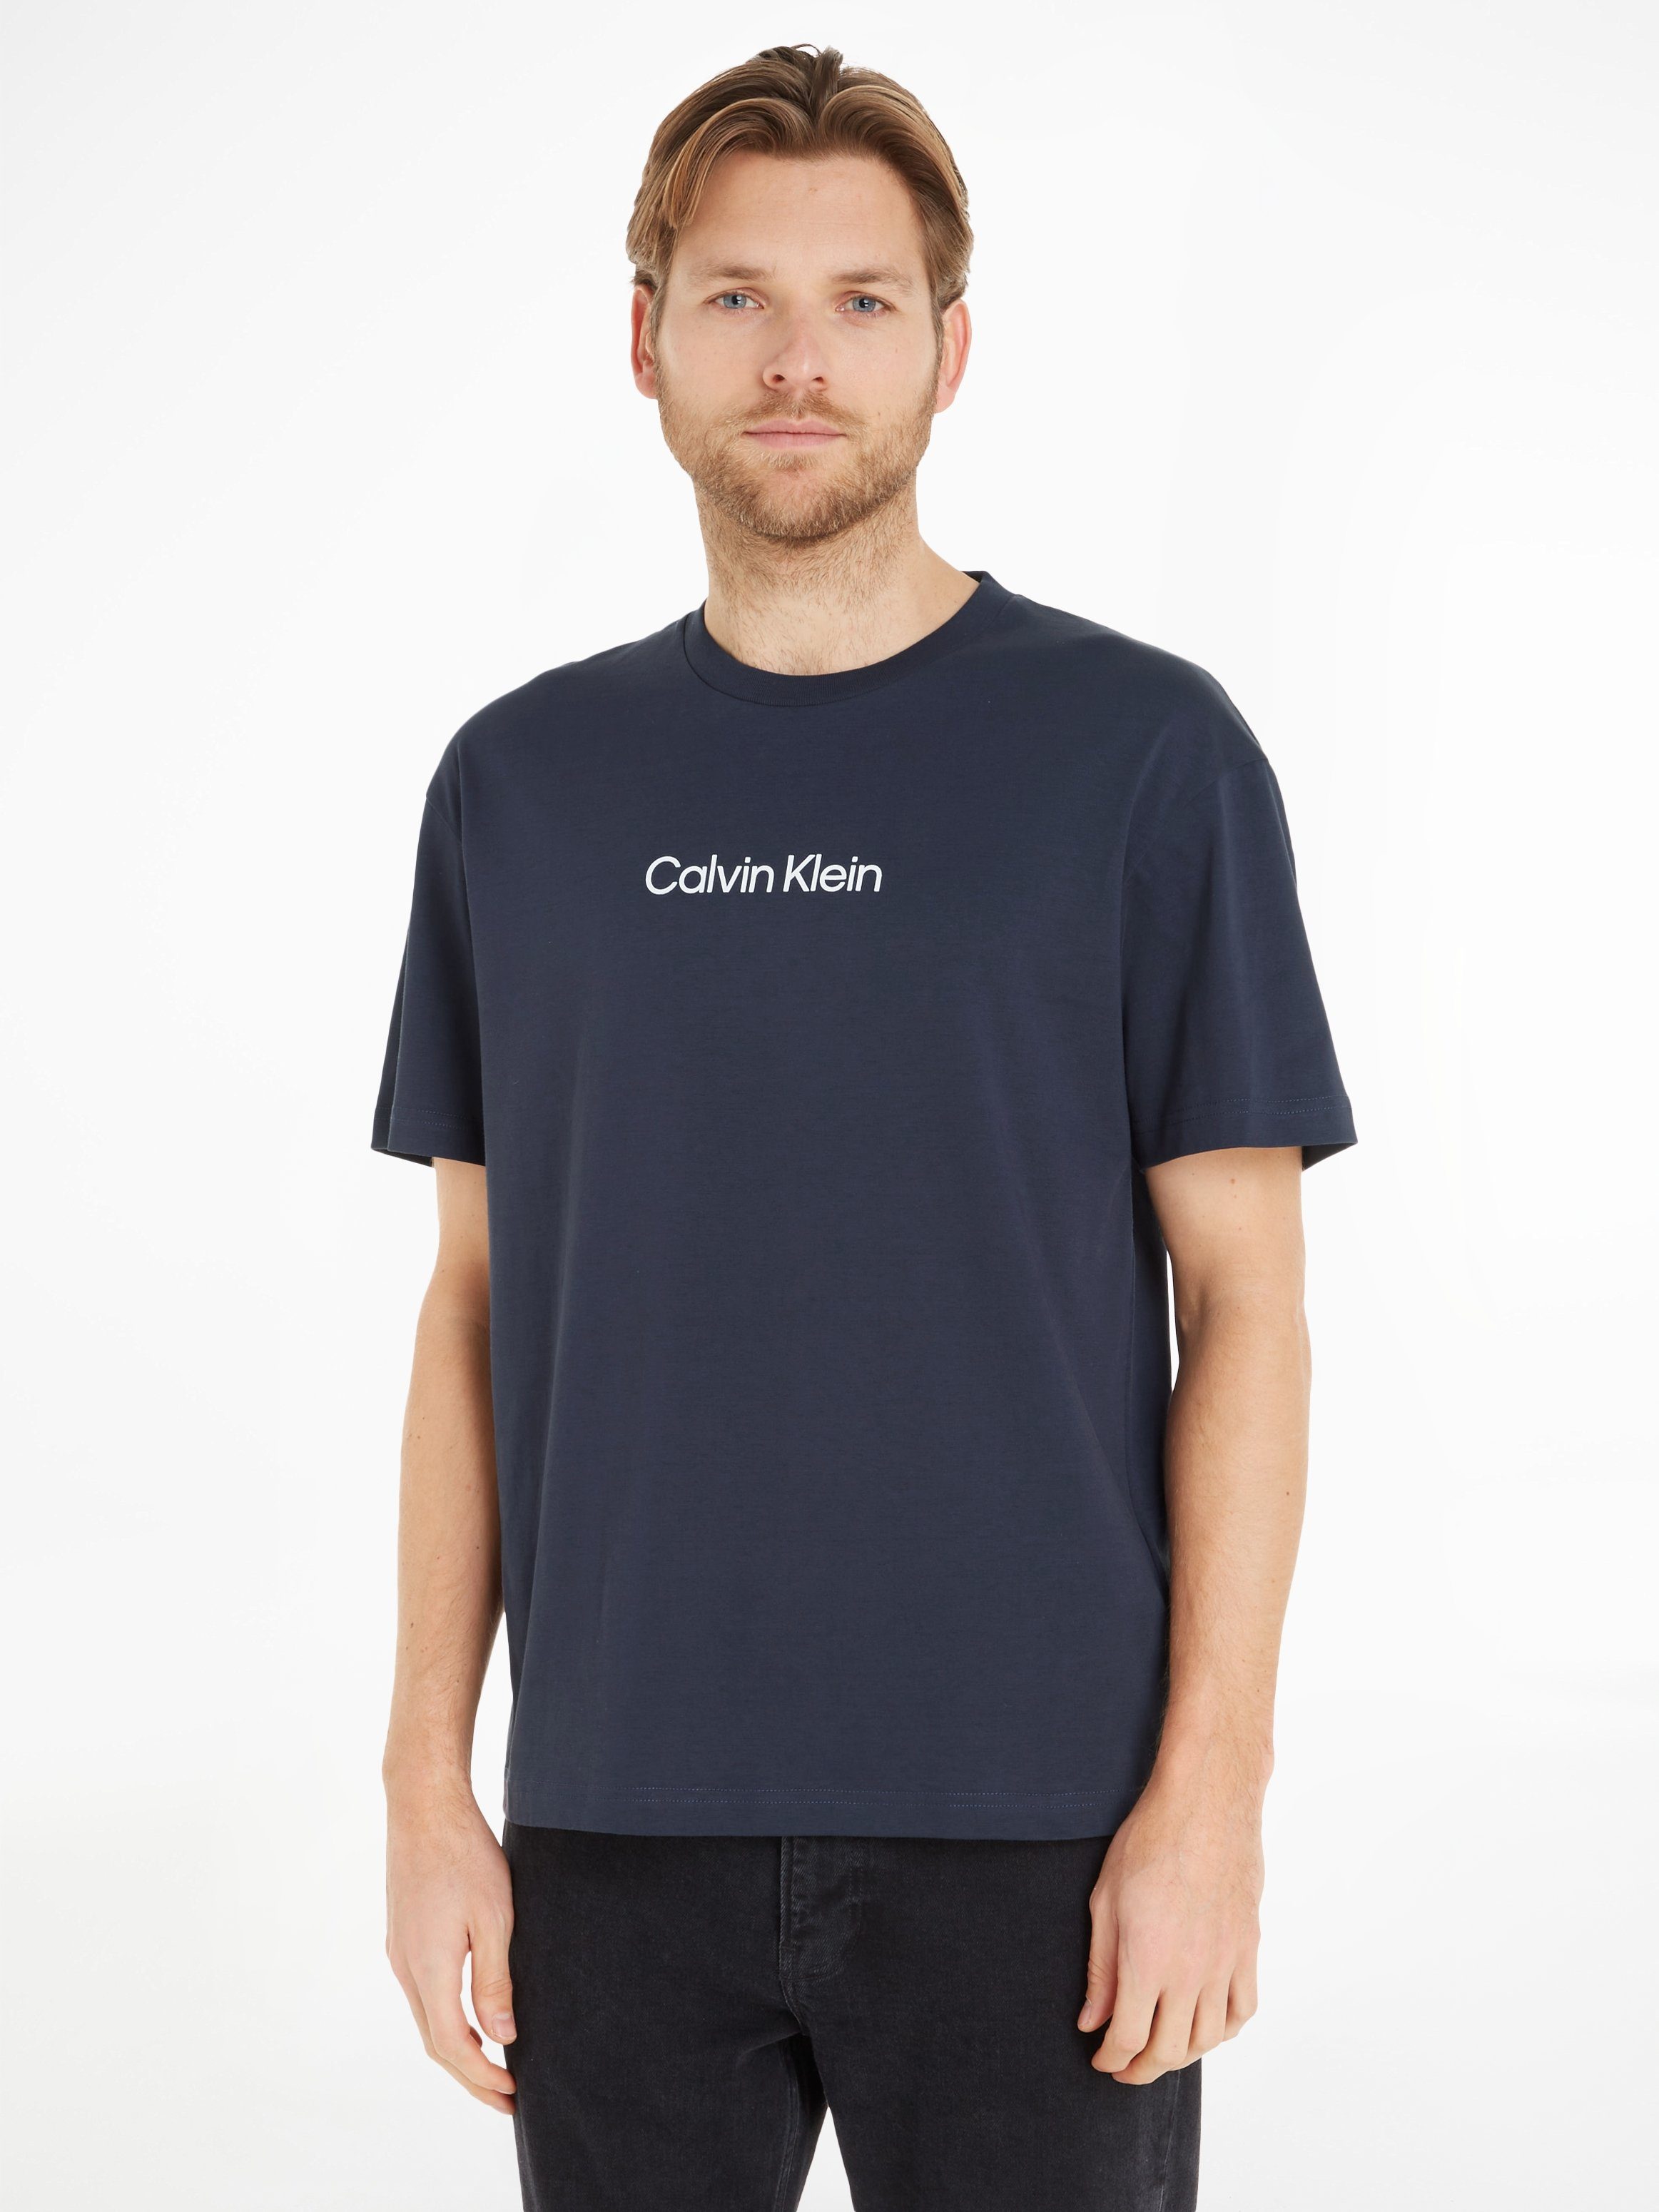 COMFORT Klein T-SHIRT Night HERO T-Shirt mit Markenlabel aufgedrucktem Sky LOGO Calvin